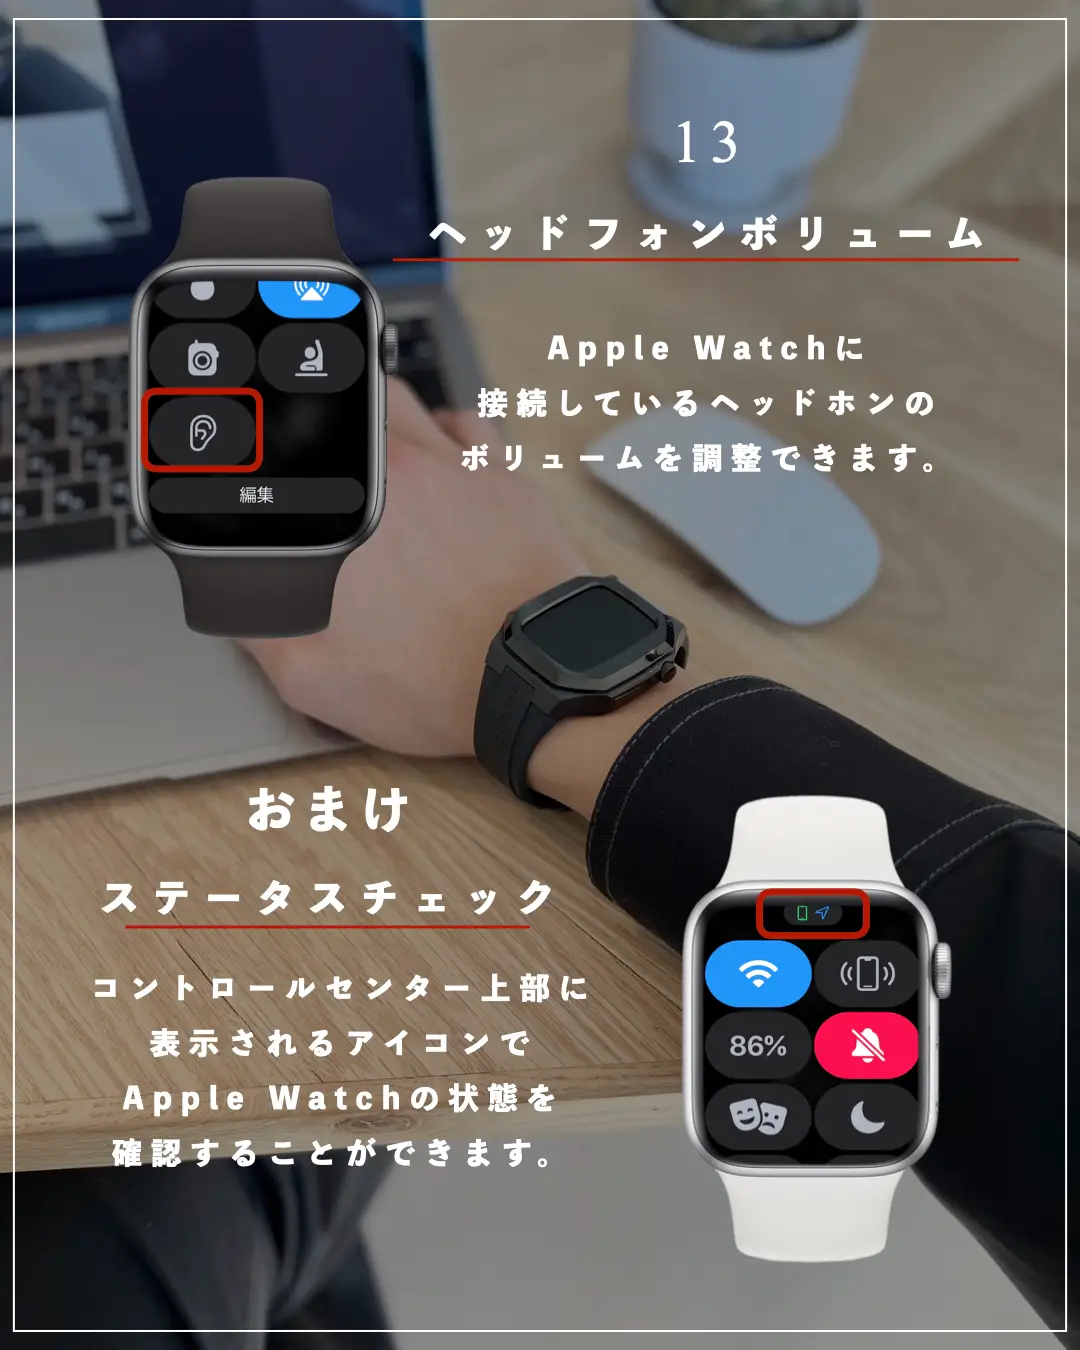 apple watch壁紙 おしゃれ - Lemon8検索